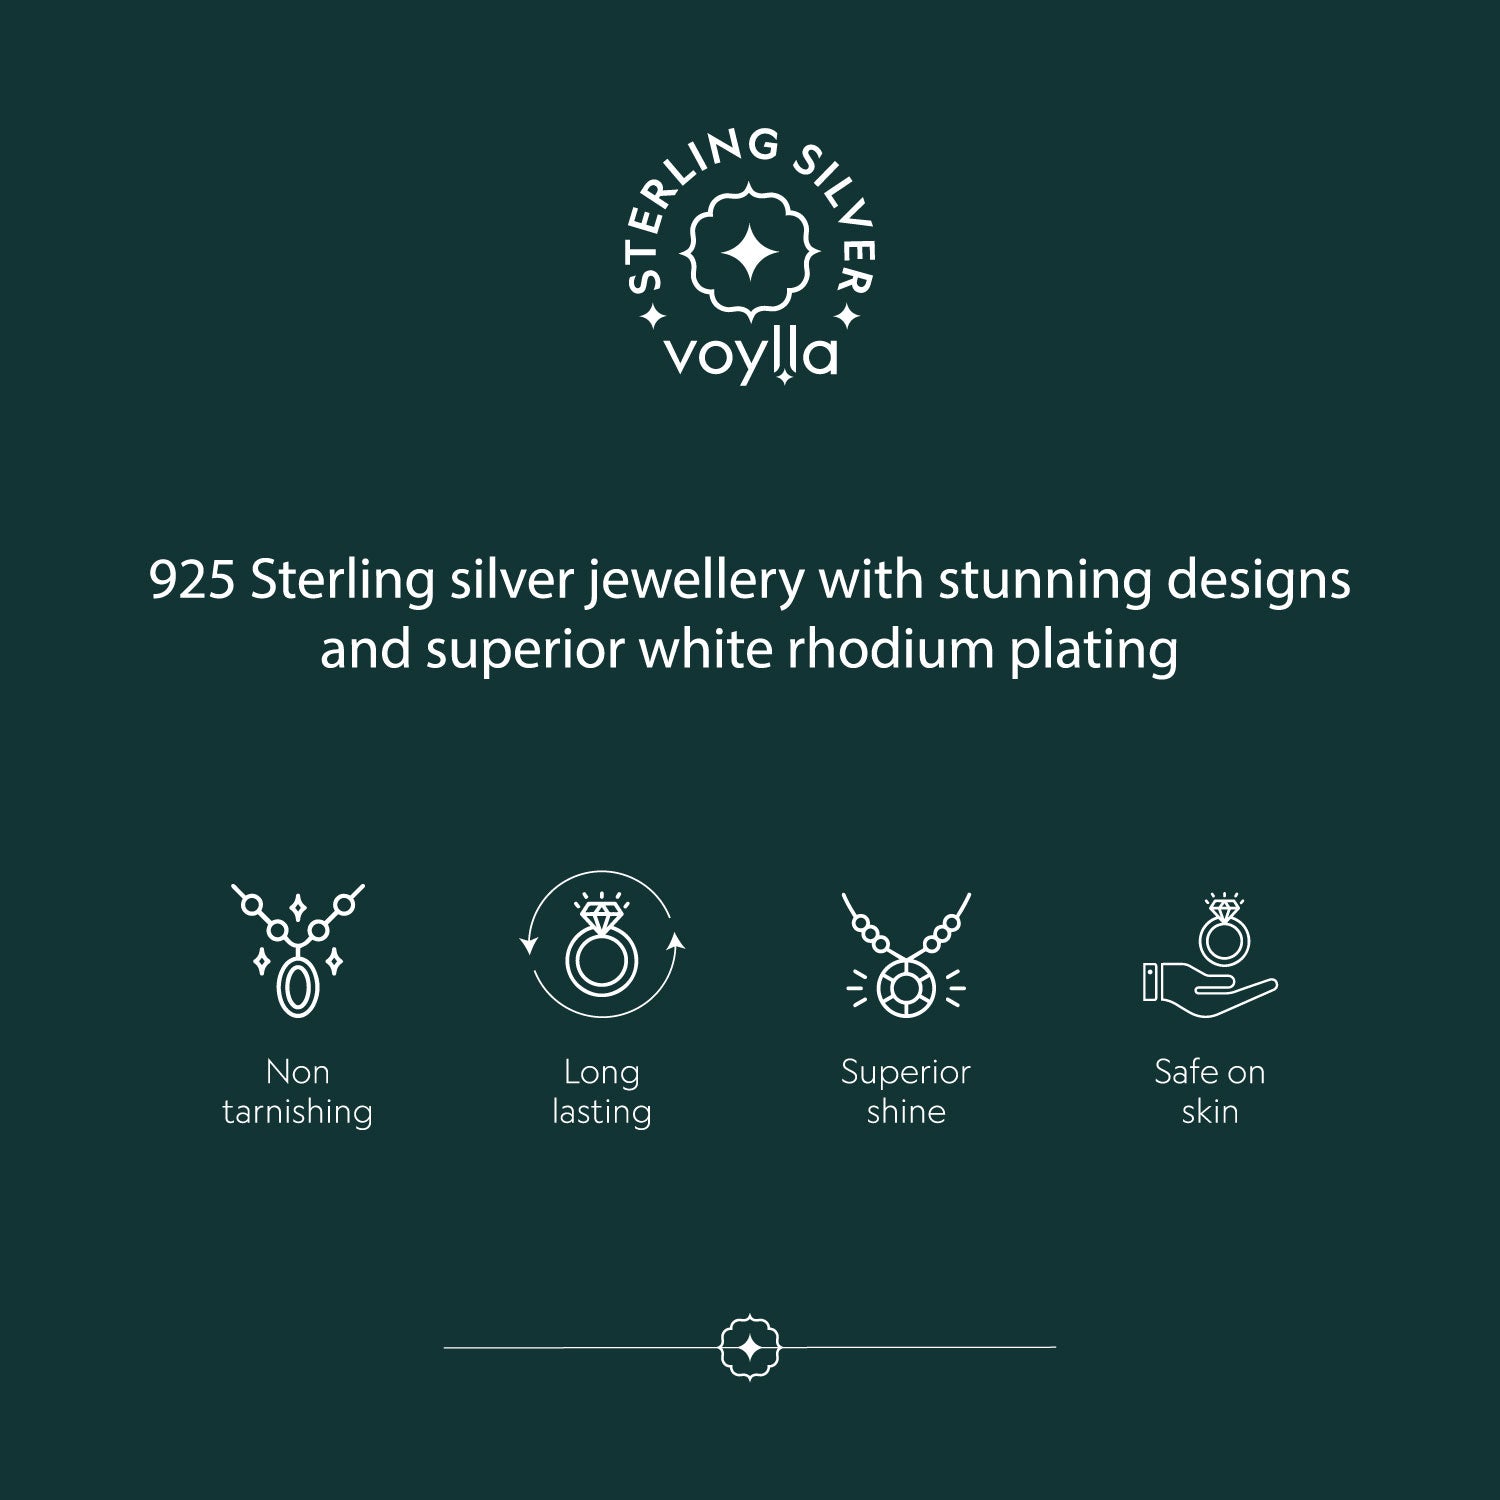 Delightful 925 Sterling Silver Floral Pendant Set embellished with Blue Stones